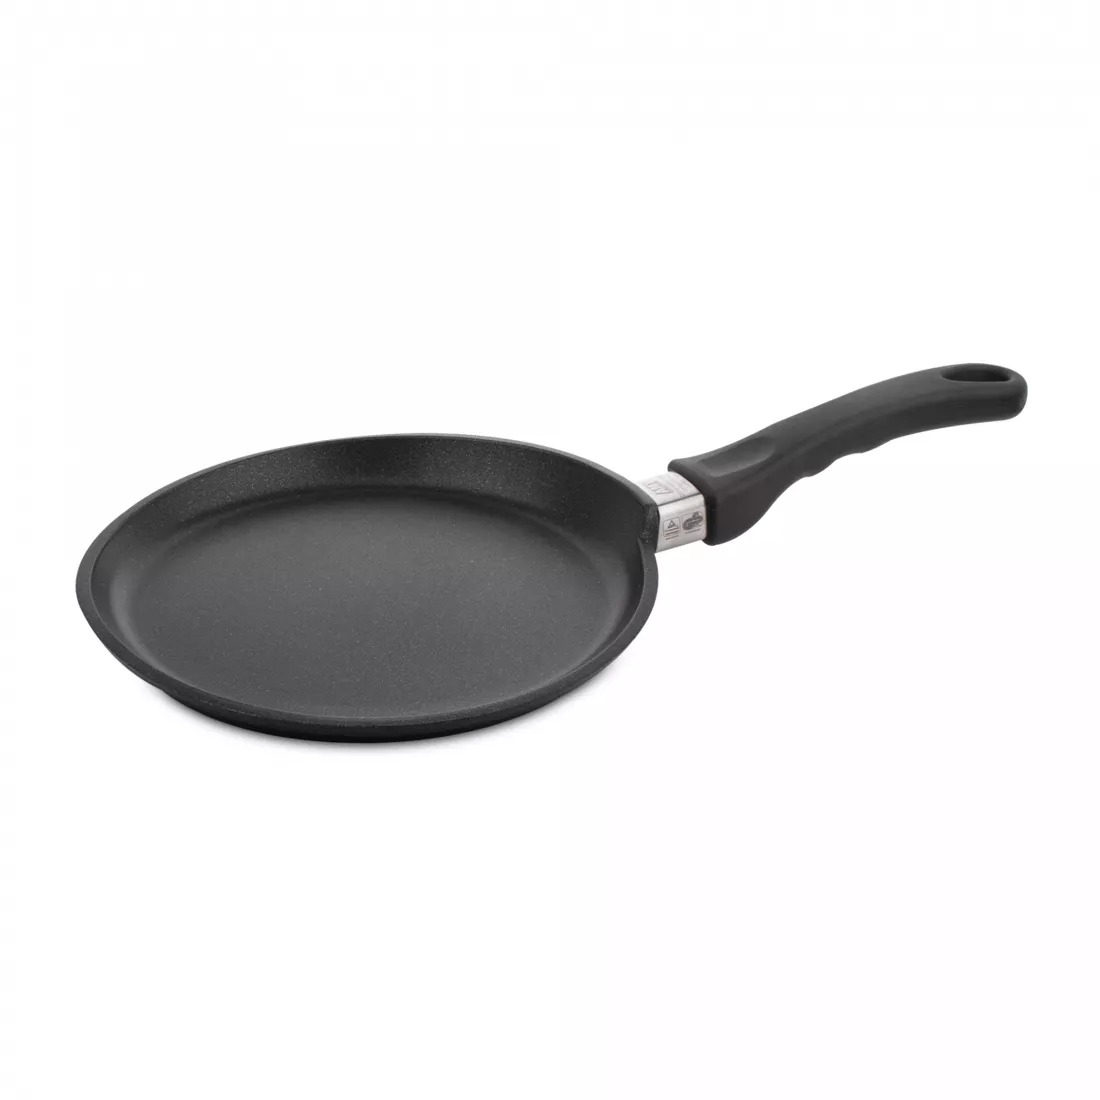 Сковорода для блинов AMT Frying Pans Titan для индукционных плит 24 см двухсторонняя сковорода для блинов и омлета pancake maker